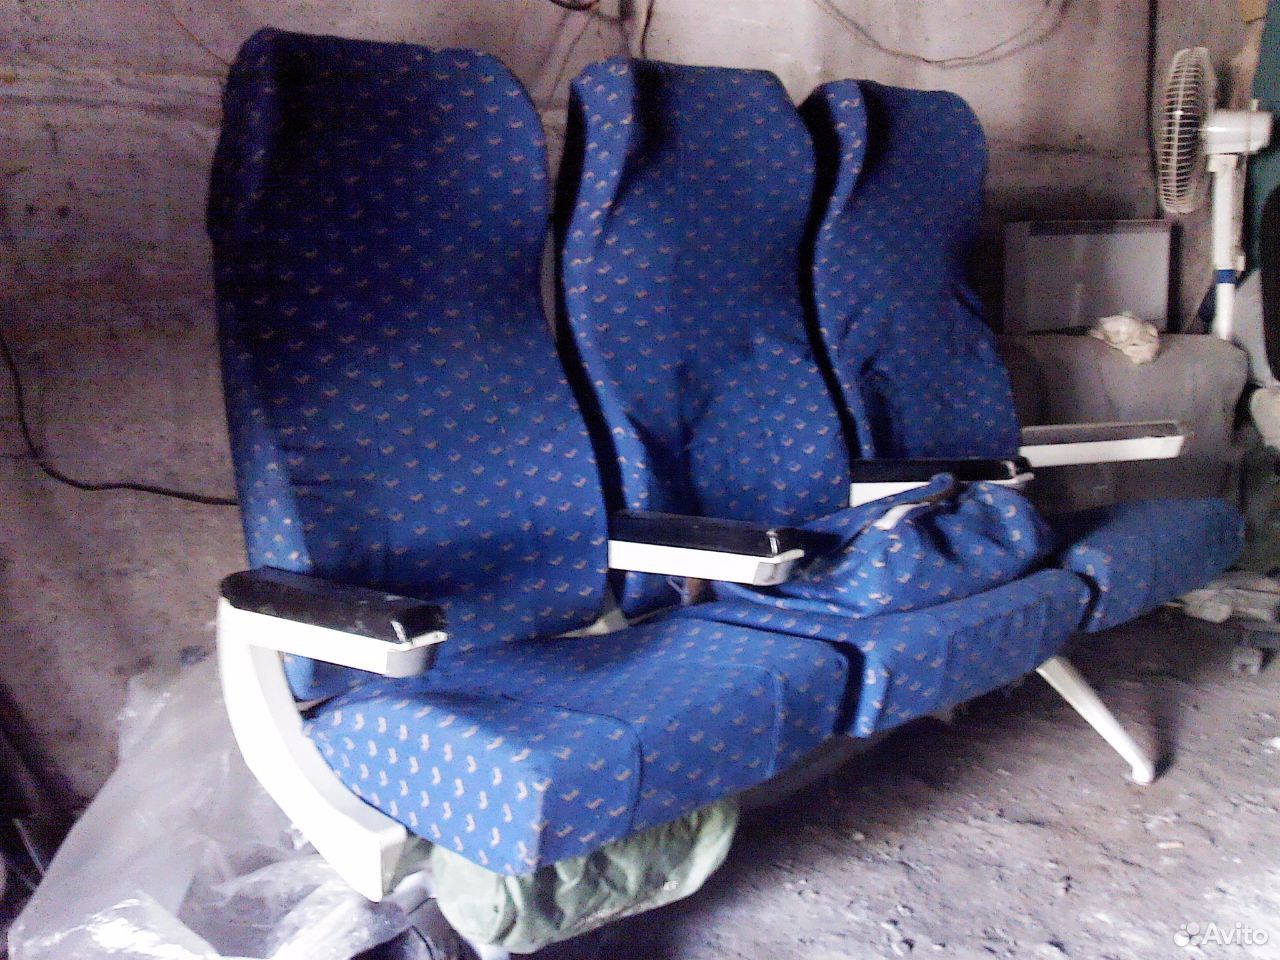 система навигации встроенная в спинку самолетного кресла 21910 фунтов